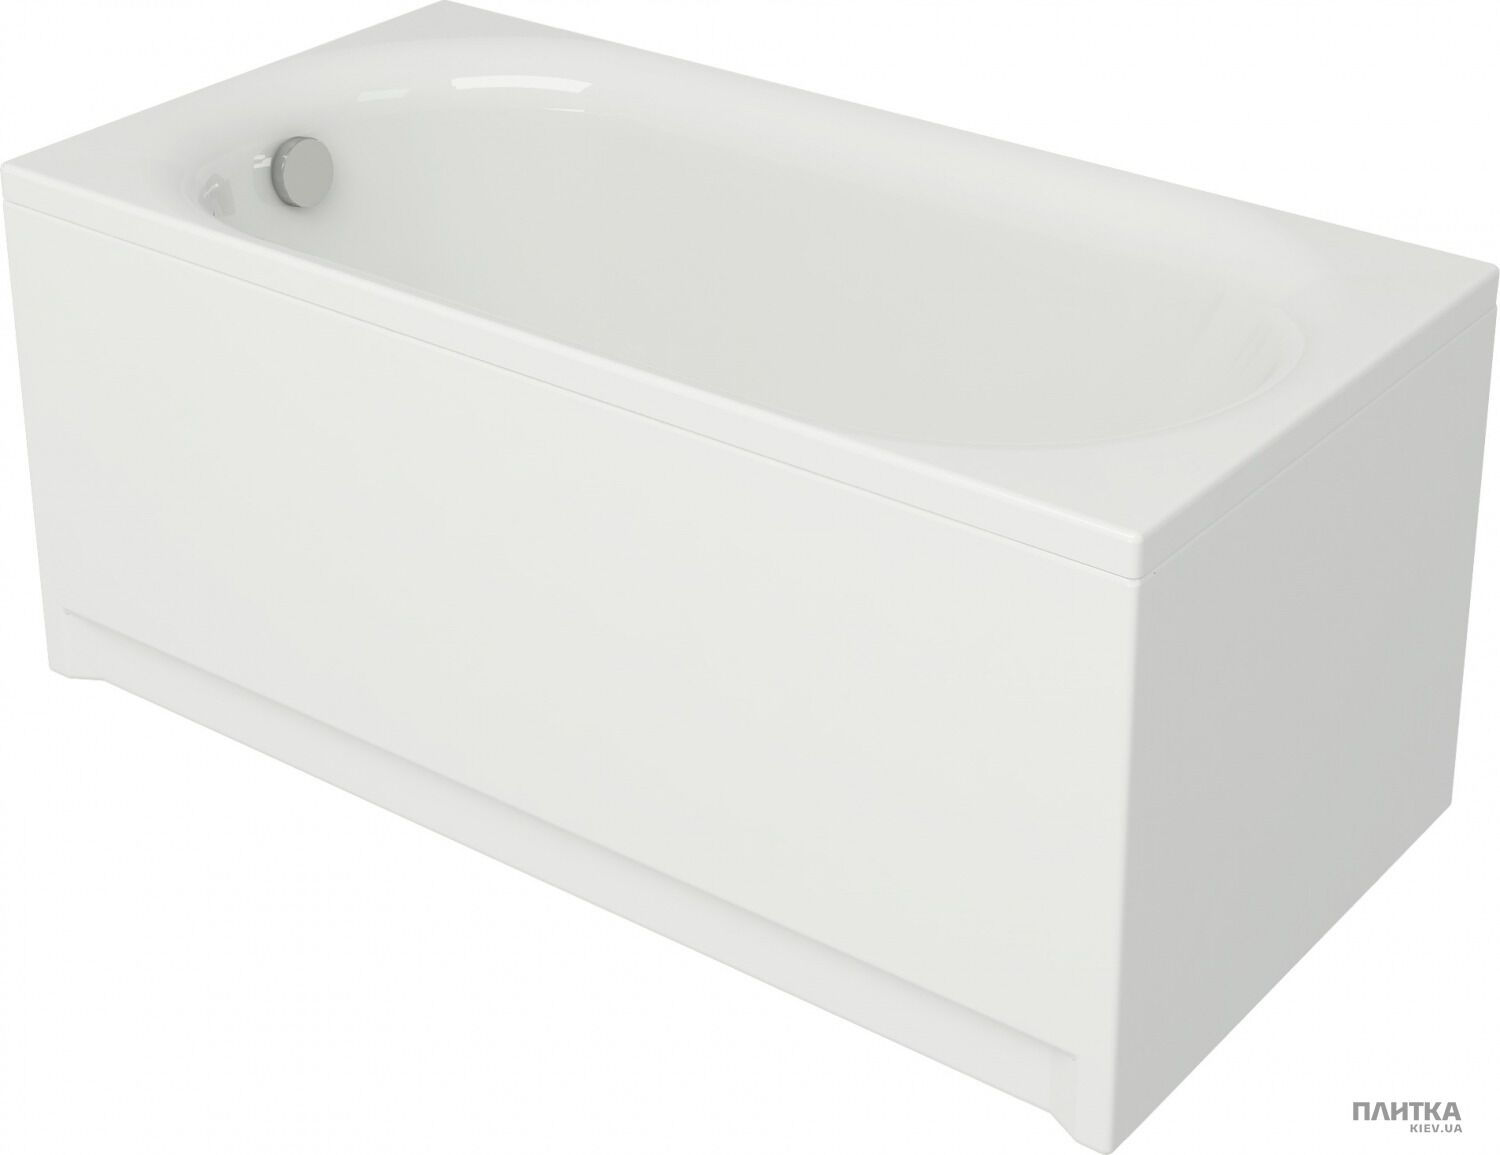 Акриловая ванна Cersanit Octavia 160x70 см белый